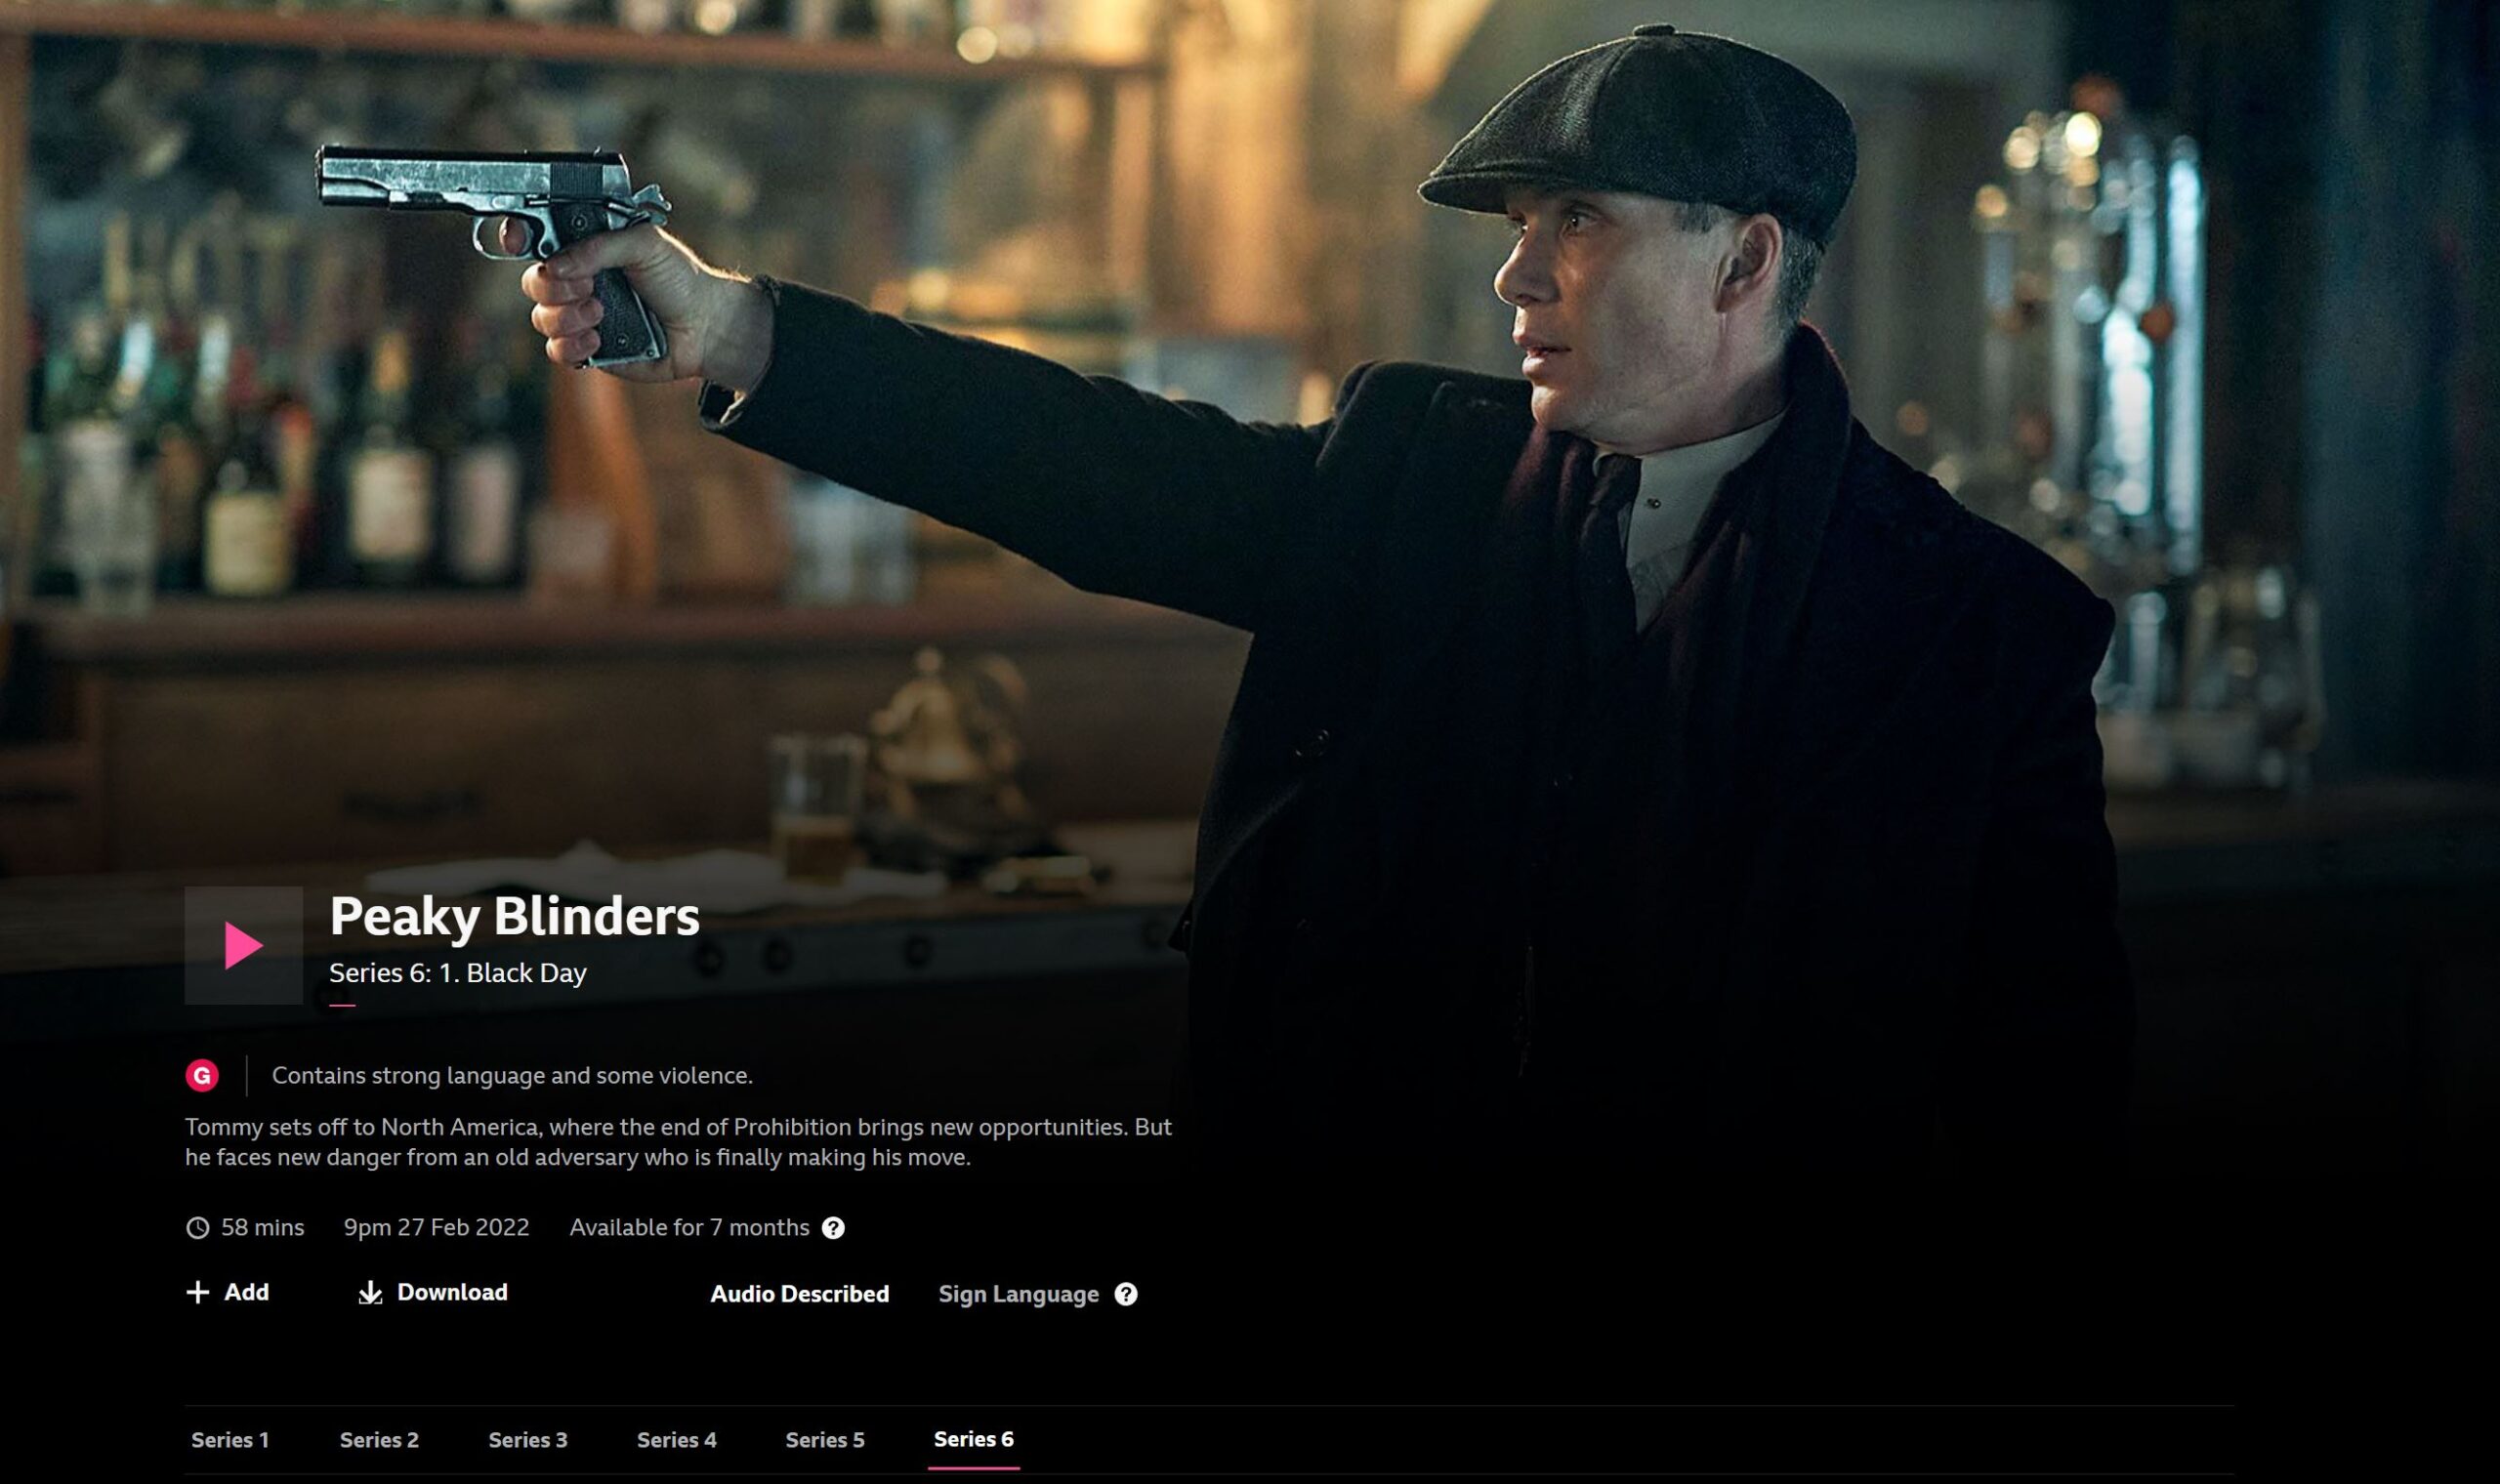 watch Peaky Blinders Season 6 online on BBC